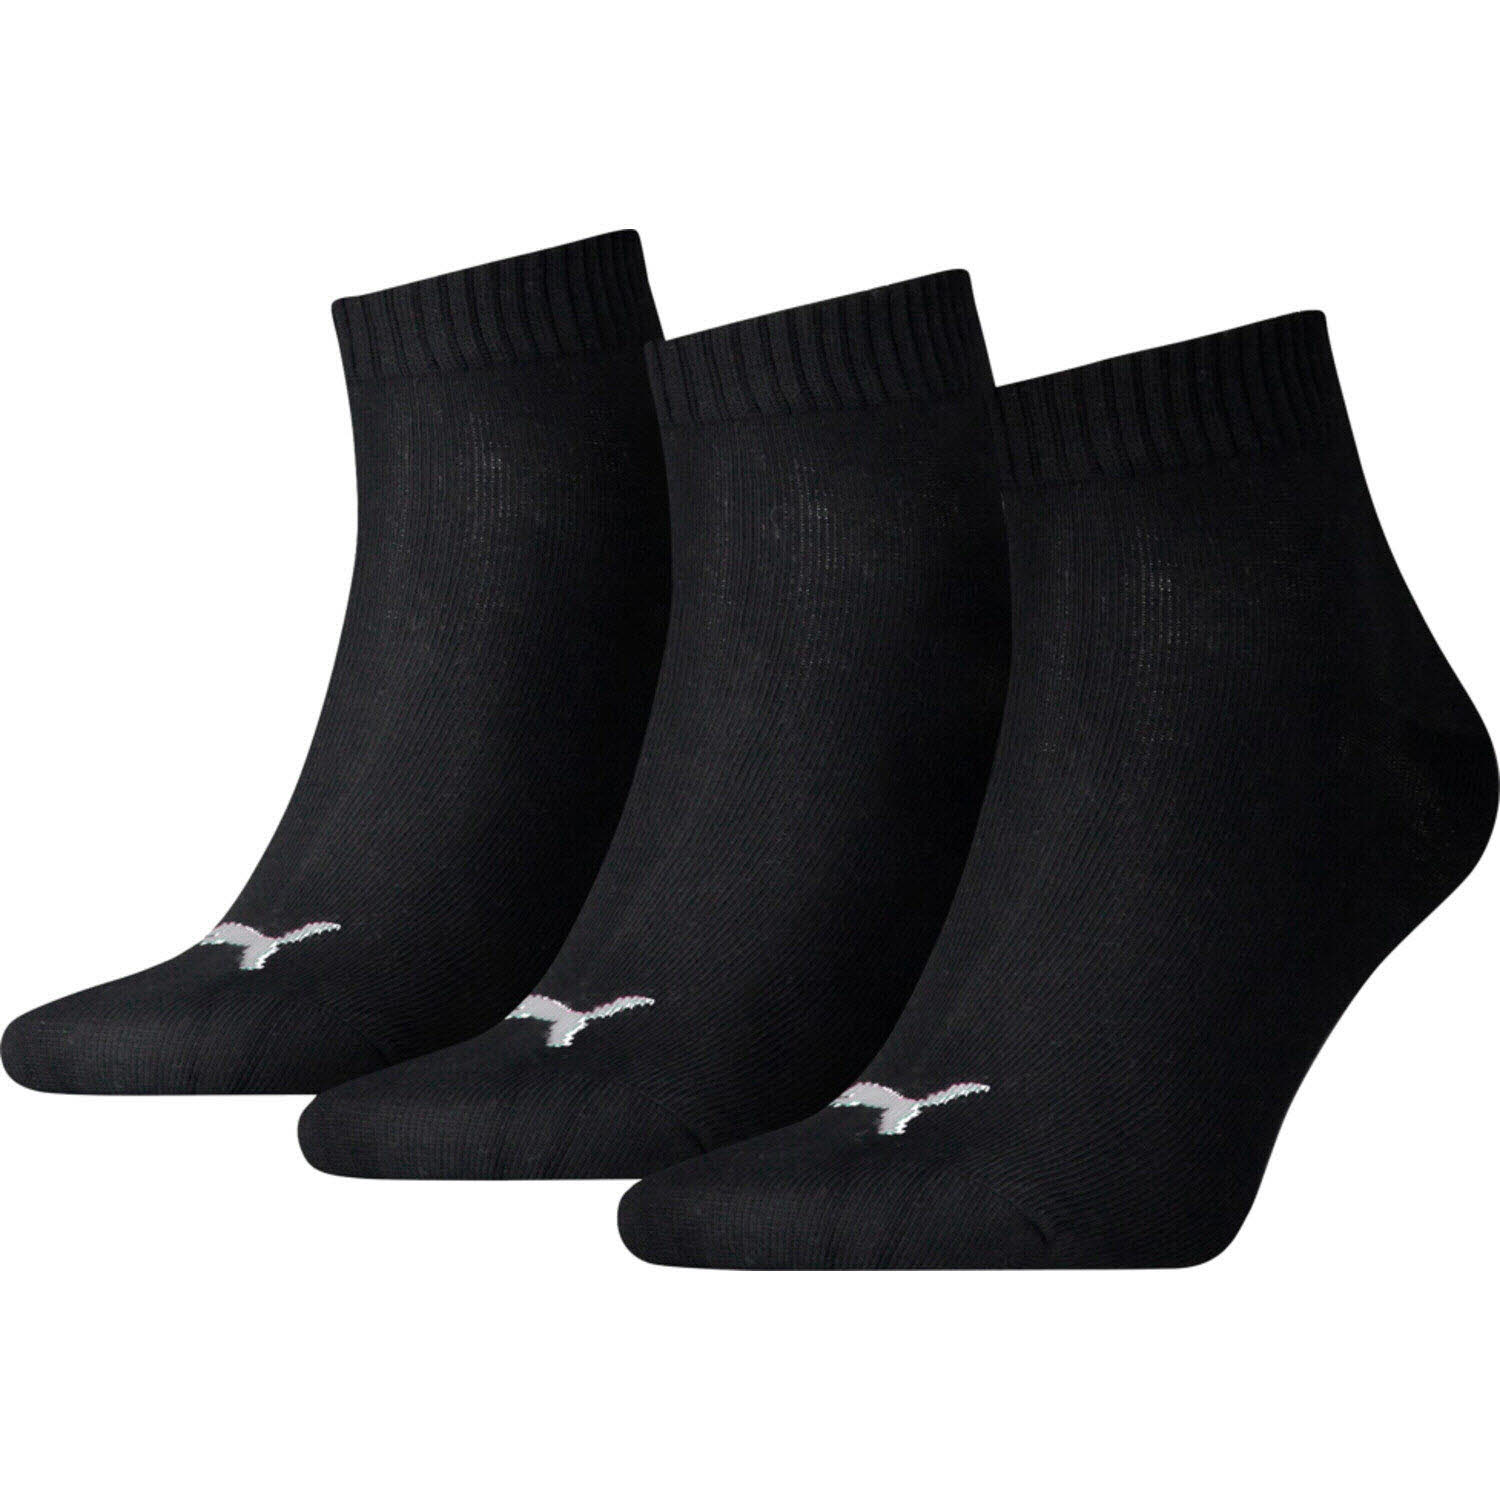 Unisex Socken von Puma auch in Schwarz erhältlich